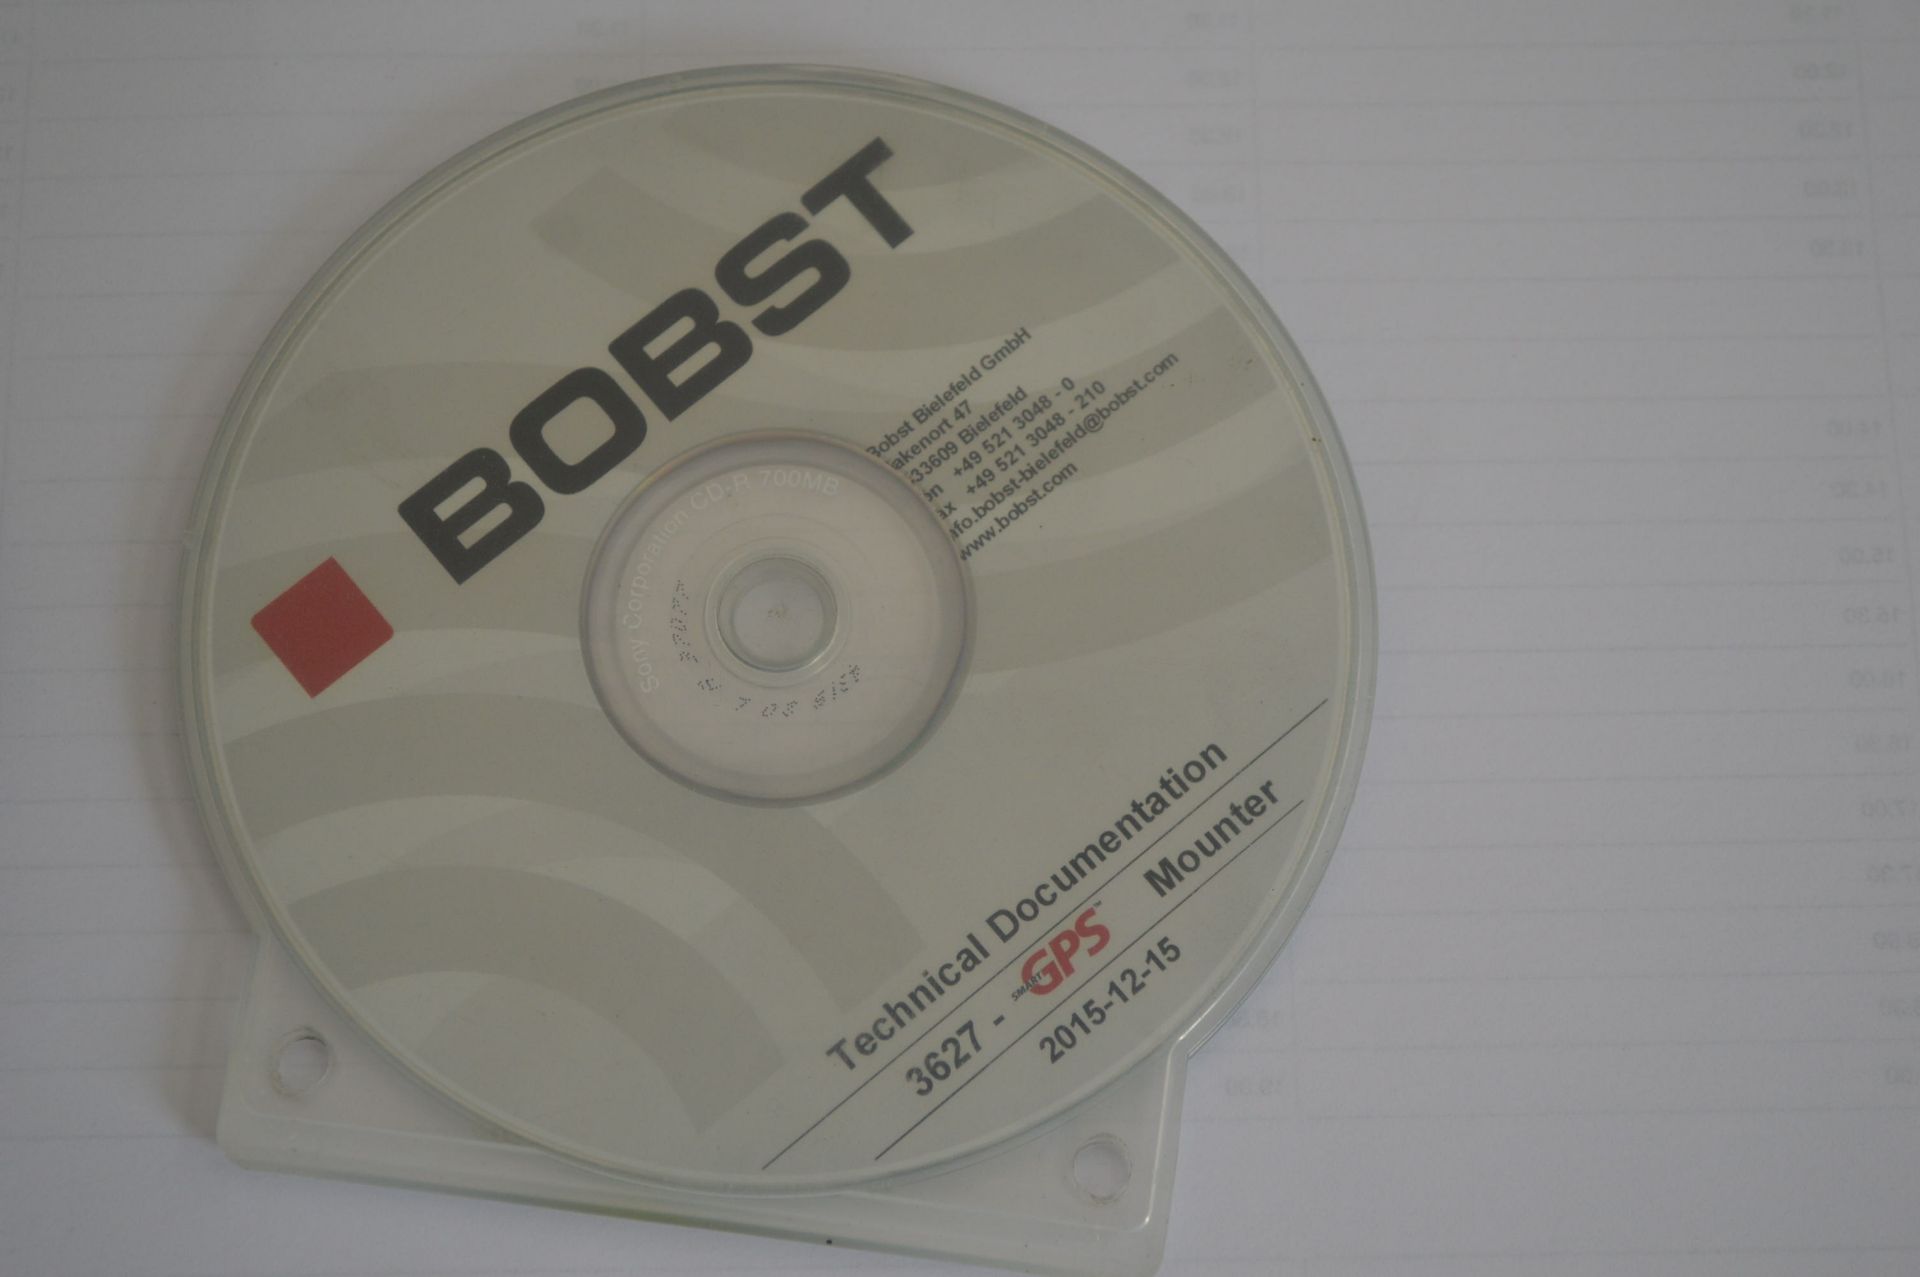 Bobst F&K 20 SIX CS 10 COLOUR 1700mm CI FLEXOGRAPHIC PRINTING PRESS, machine no. 3626, Com No 10029, - Image 59 of 62